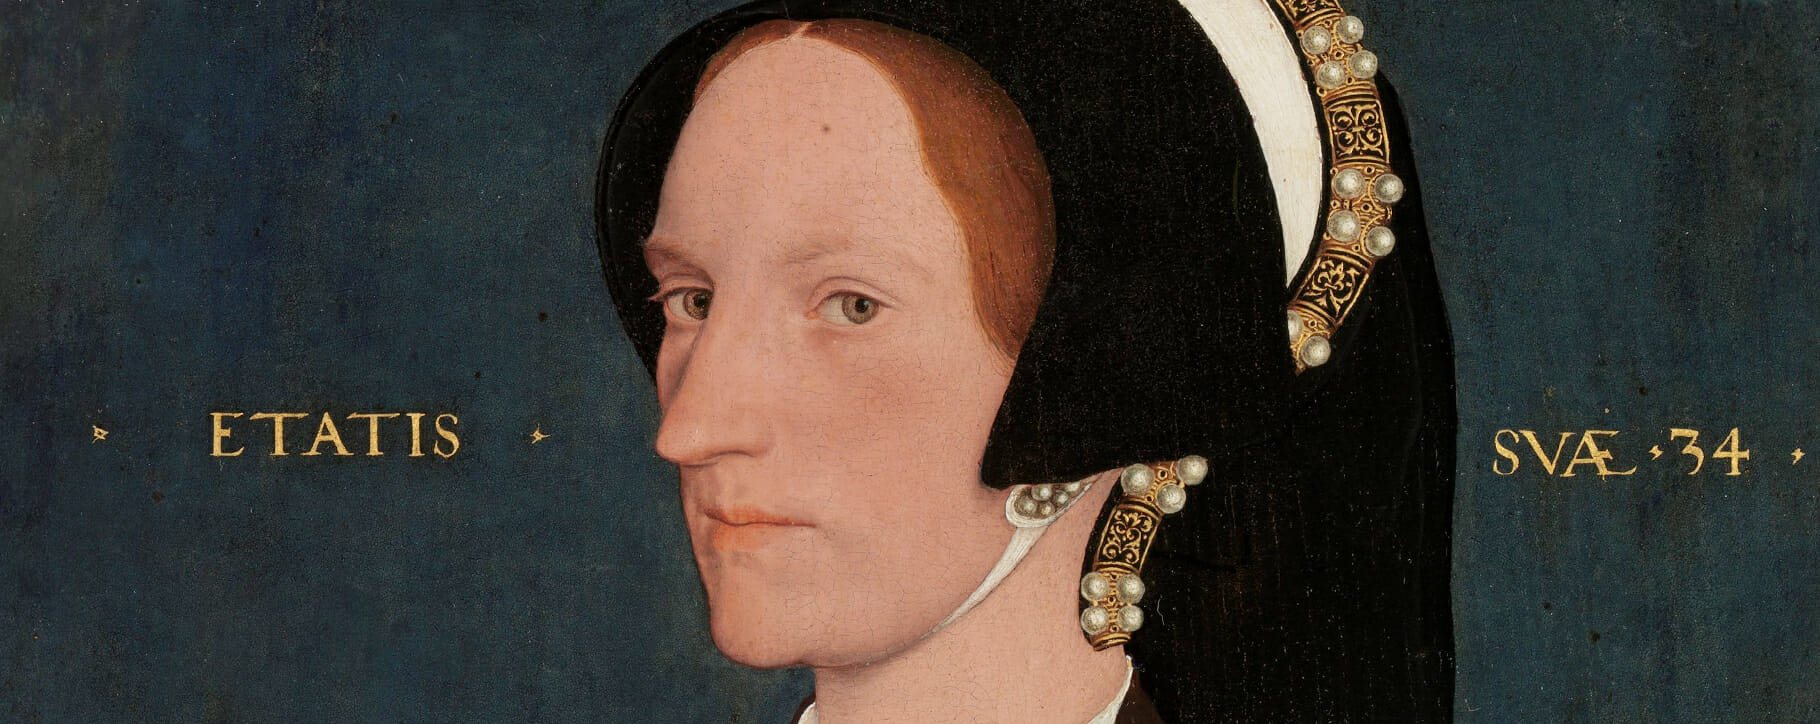 Holbein lady